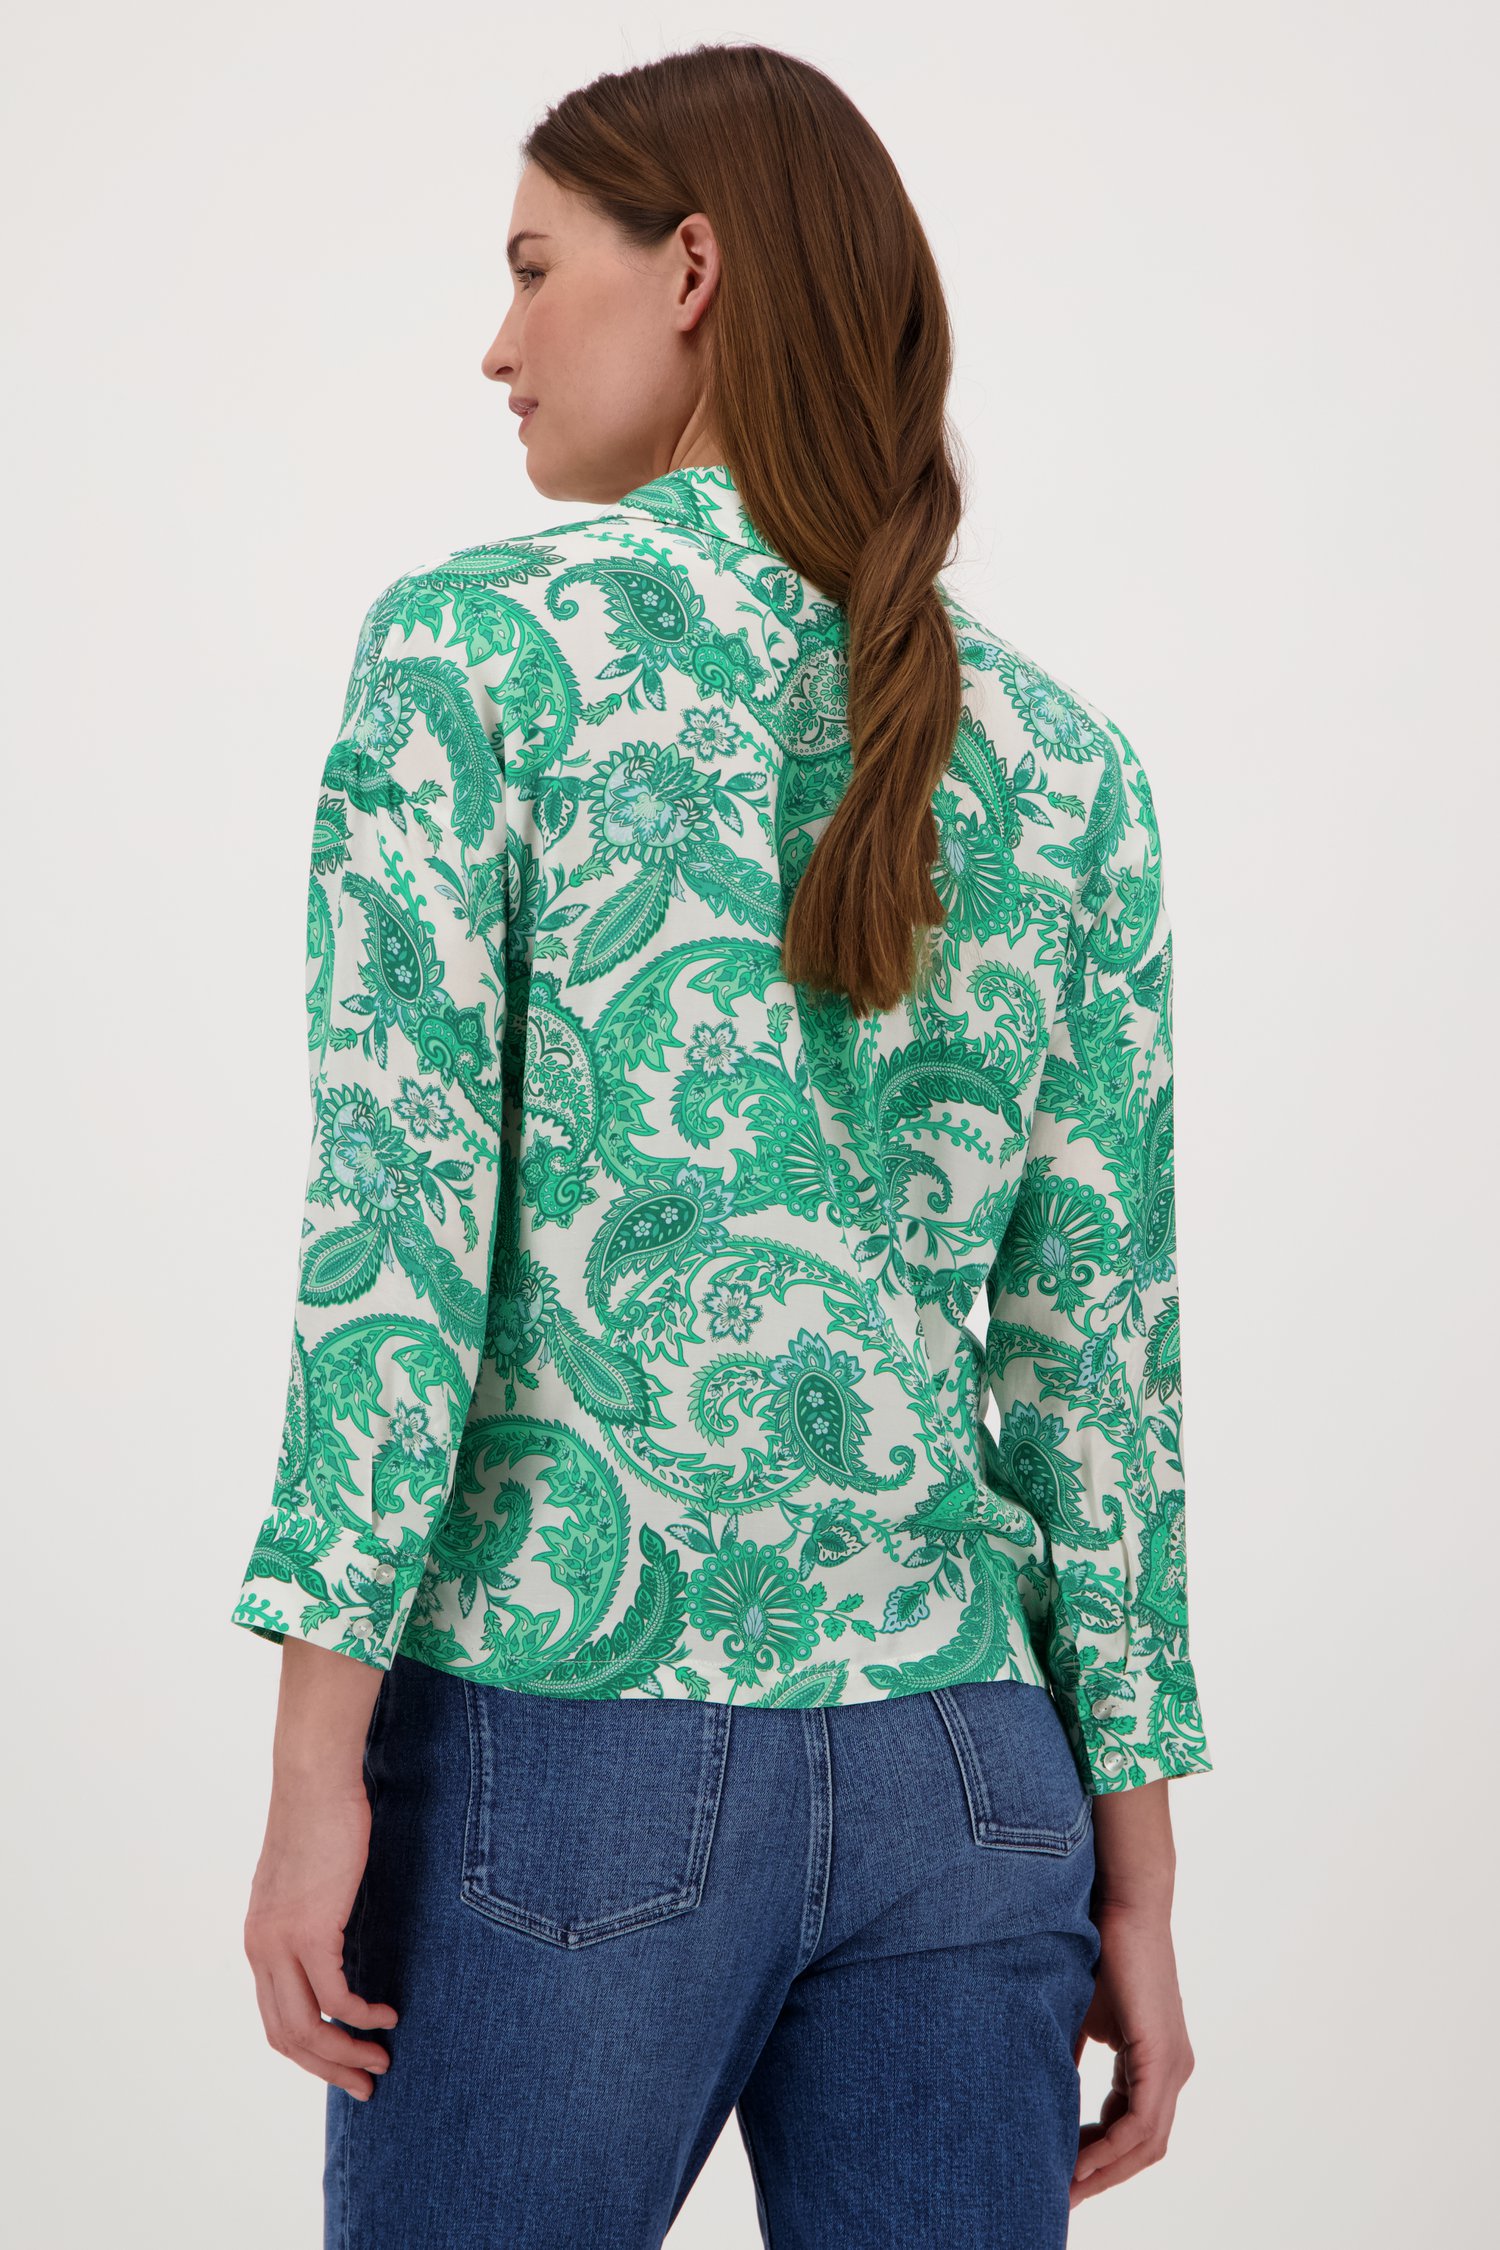 Ecru blouse met groene paisley print van Louise voor Dames